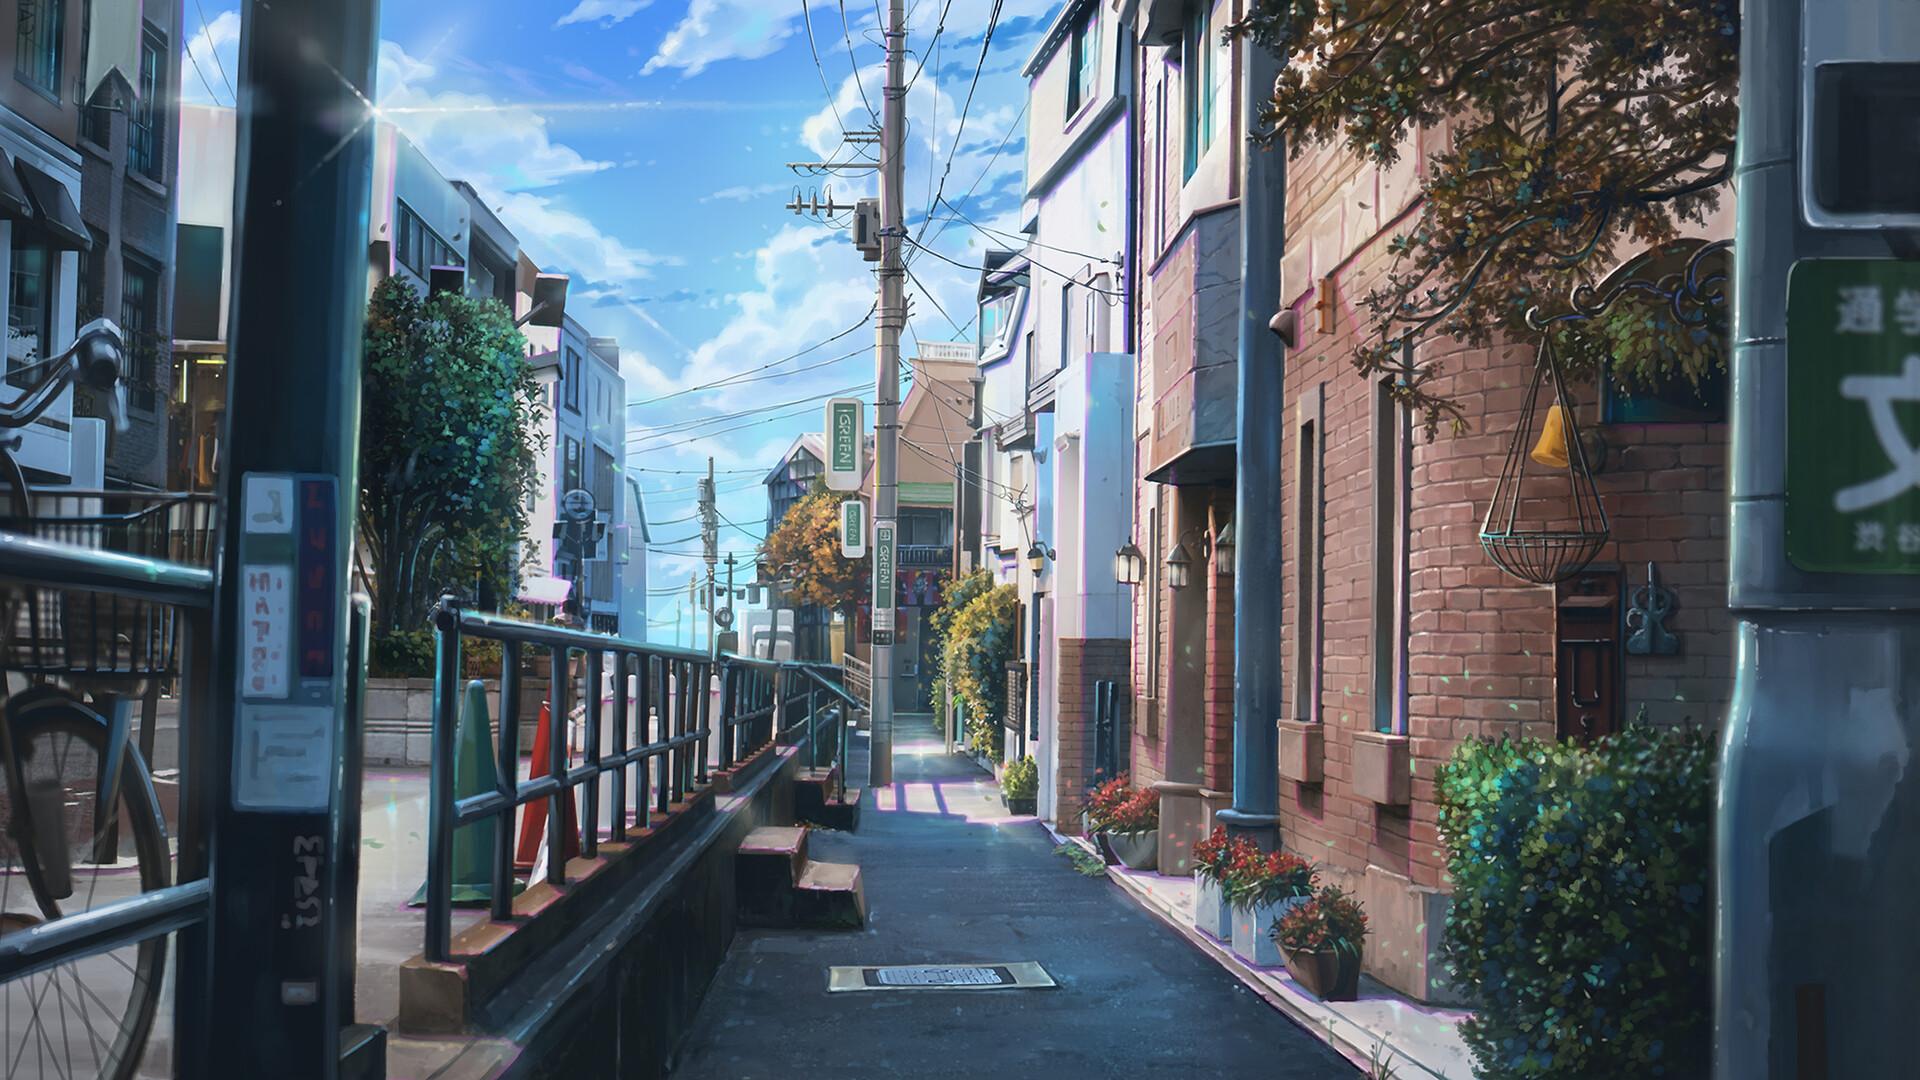 动漫日本街道壁纸图片